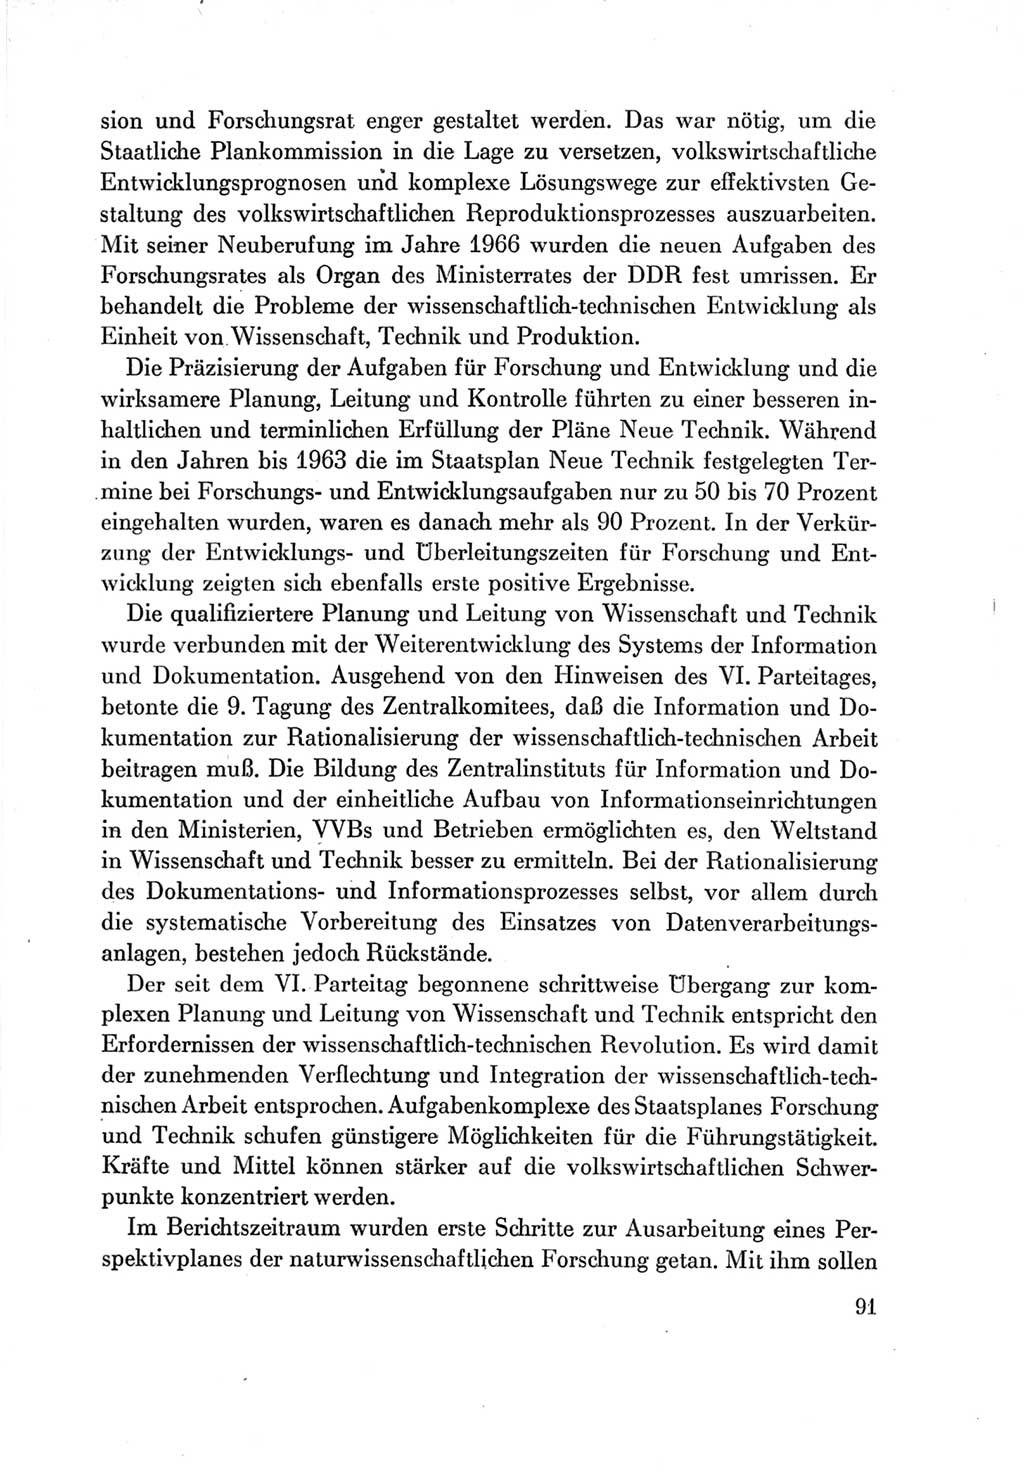 Protokoll der Verhandlungen des Ⅶ. Parteitages der Sozialistischen Einheitspartei Deutschlands (SED) [Deutsche Demokratische Republik (DDR)] 1967, Band Ⅳ, Seite 91 (Prot. Verh. Ⅶ. PT SED DDR 1967, Bd. Ⅳ, S. 91)